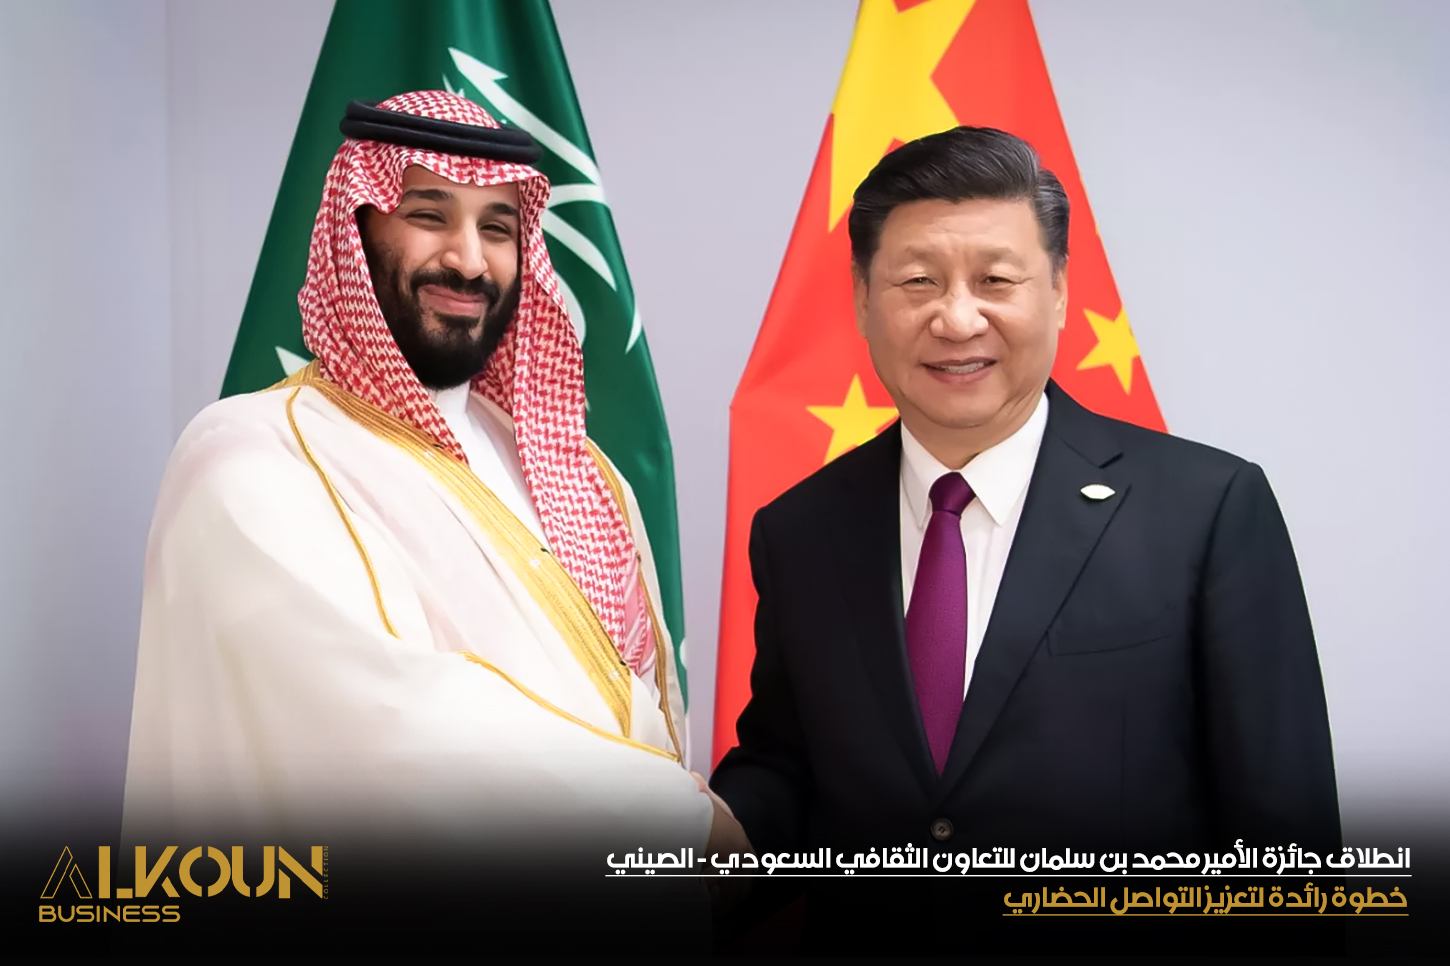 انطلاق جائزة الأمير محمد بن سلمان للتعاون الثقافي السعودي - الصيني: خطوة رائدة لتعزيز التواصل الحضاري